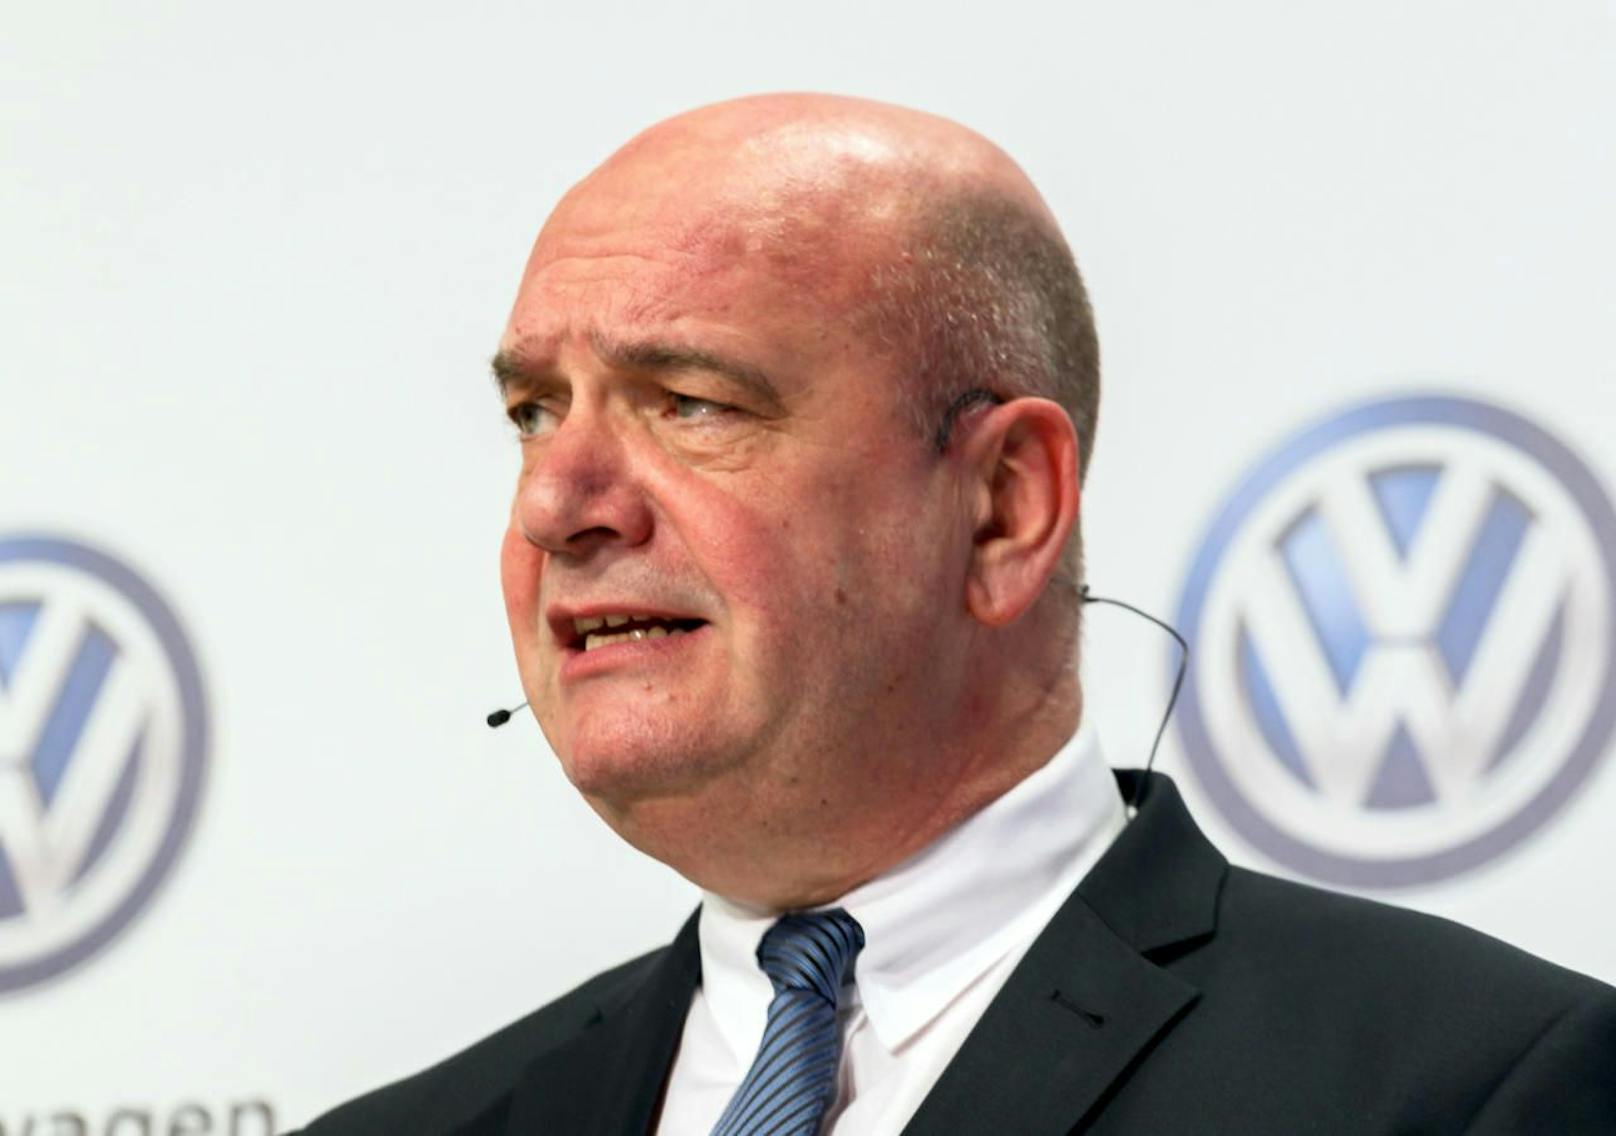 Zu hohe Gehälter für Chefs: Ermittlungen gegen VW